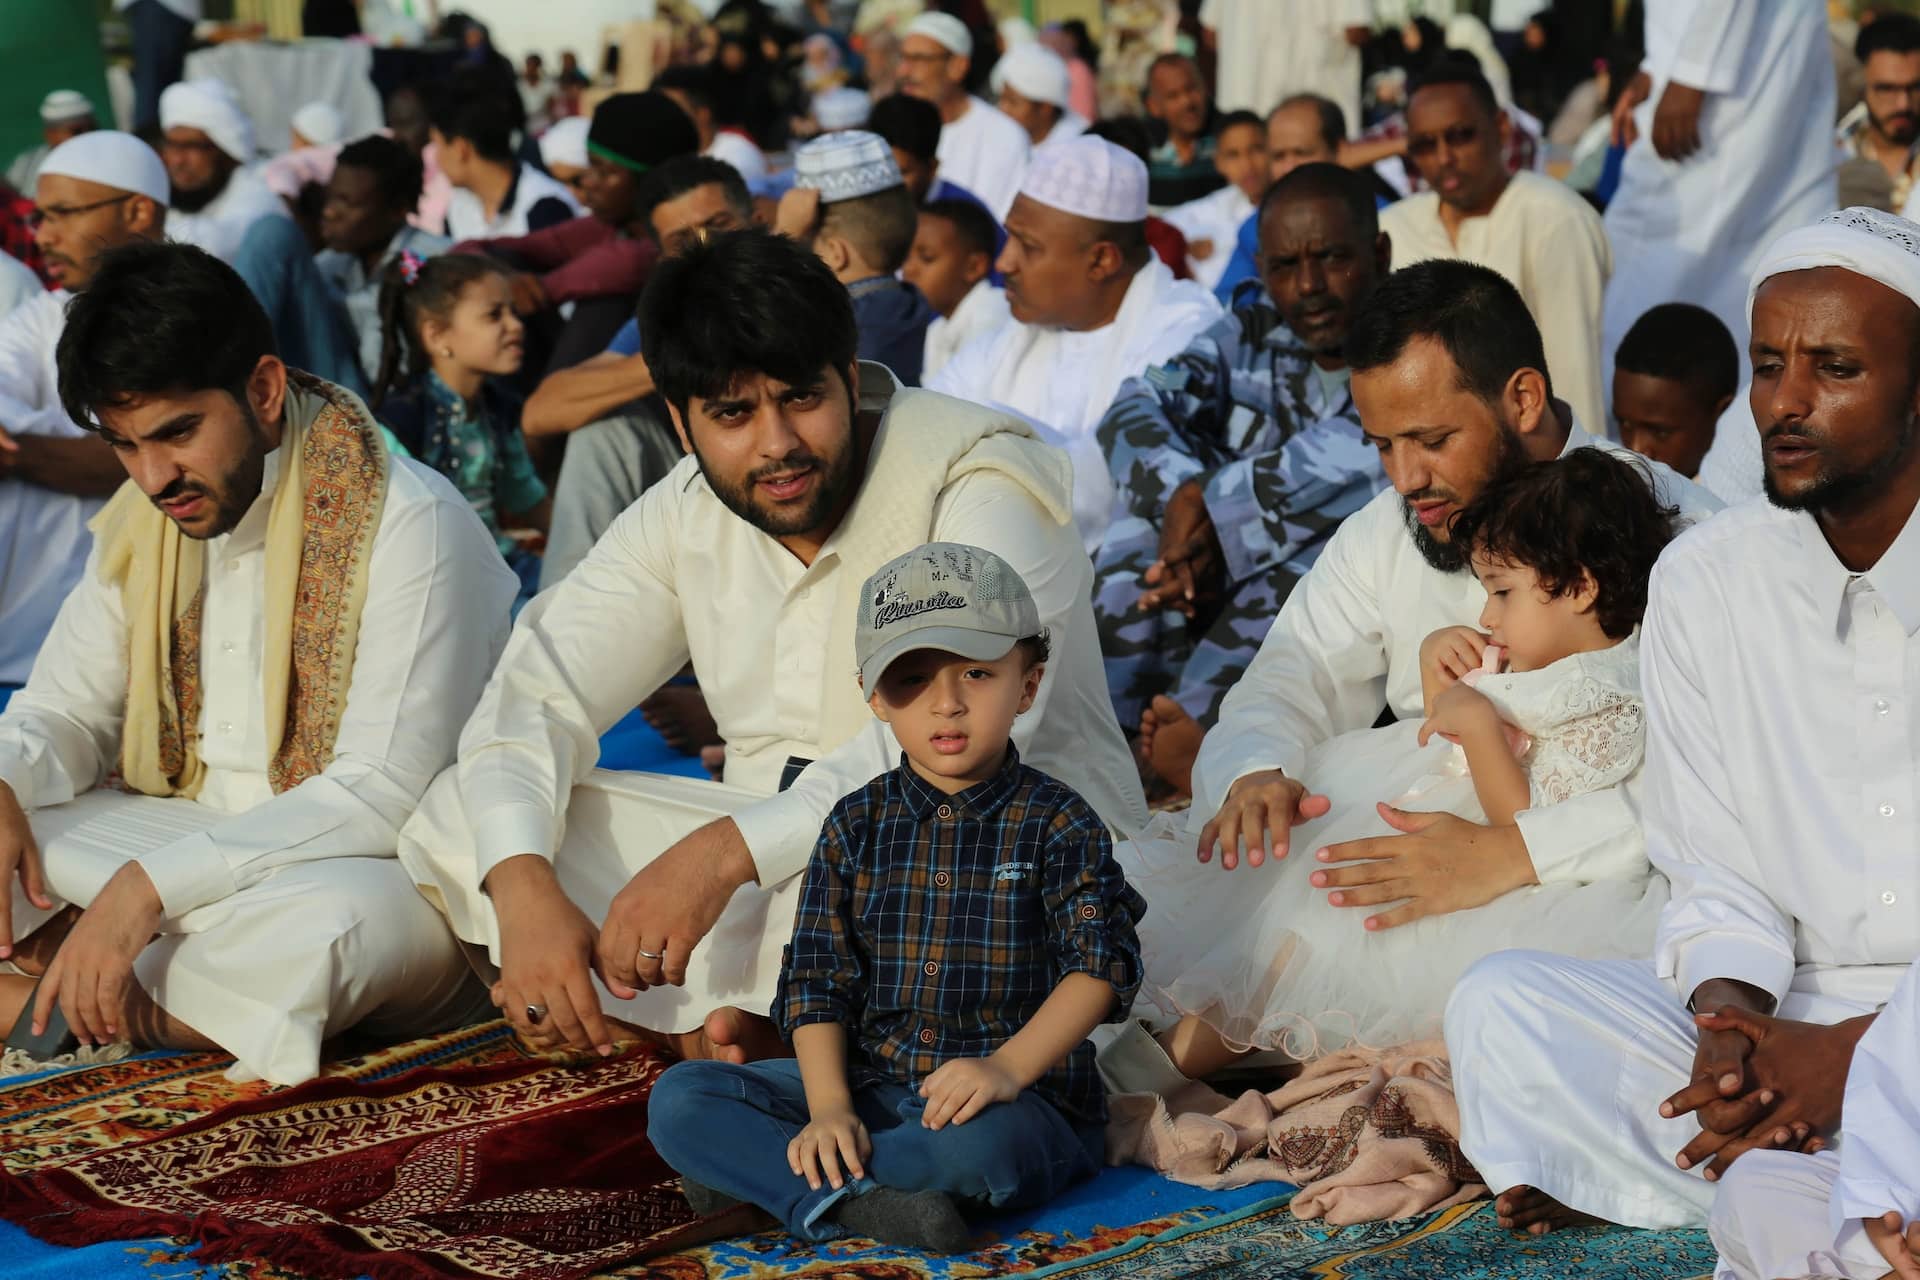 muslims praying jummah prayer together